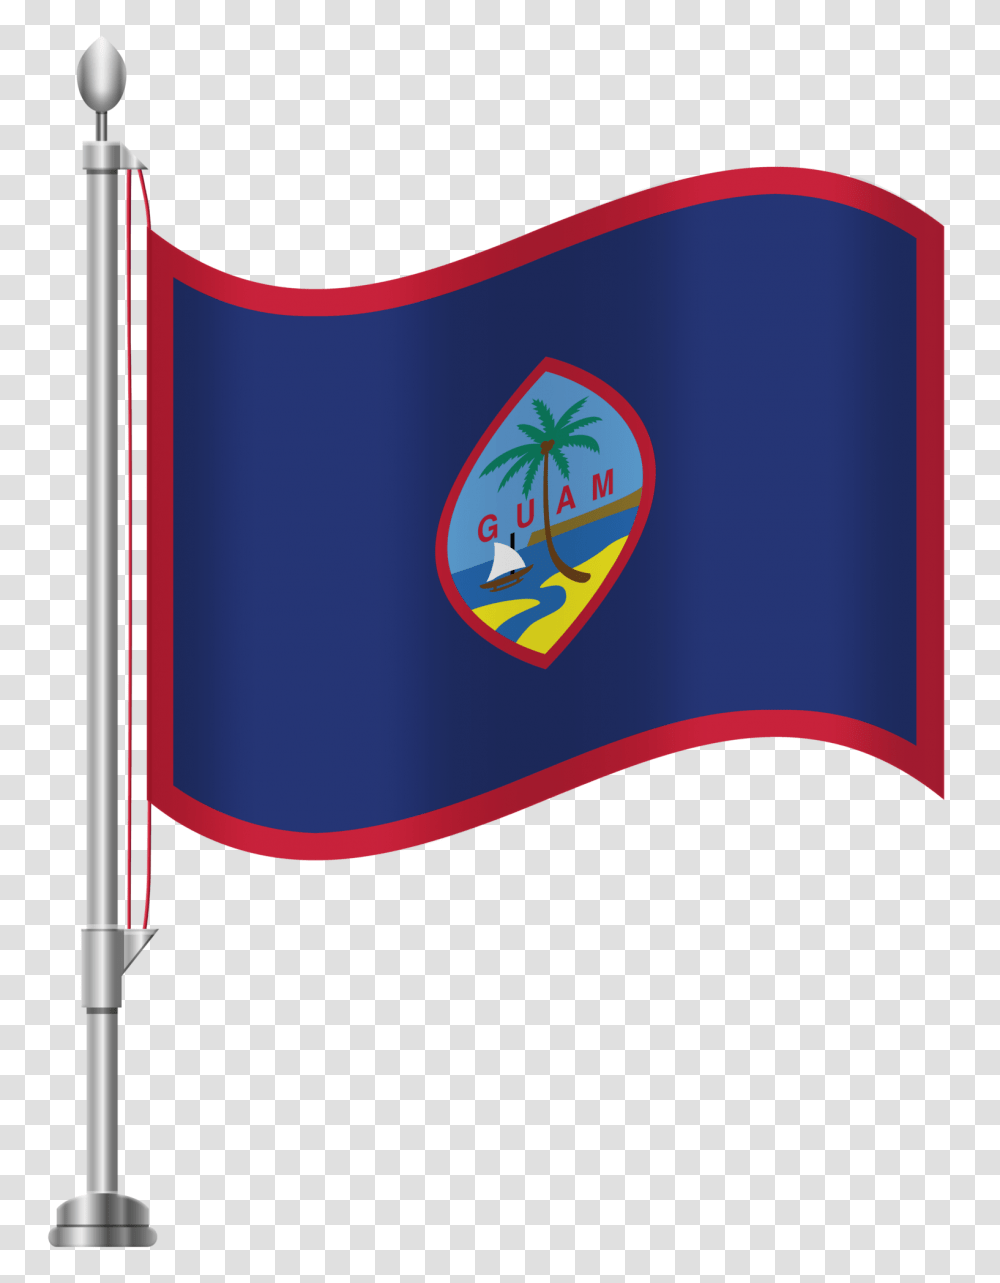 Guam Flag Clip Art, Apparel Transparent Png